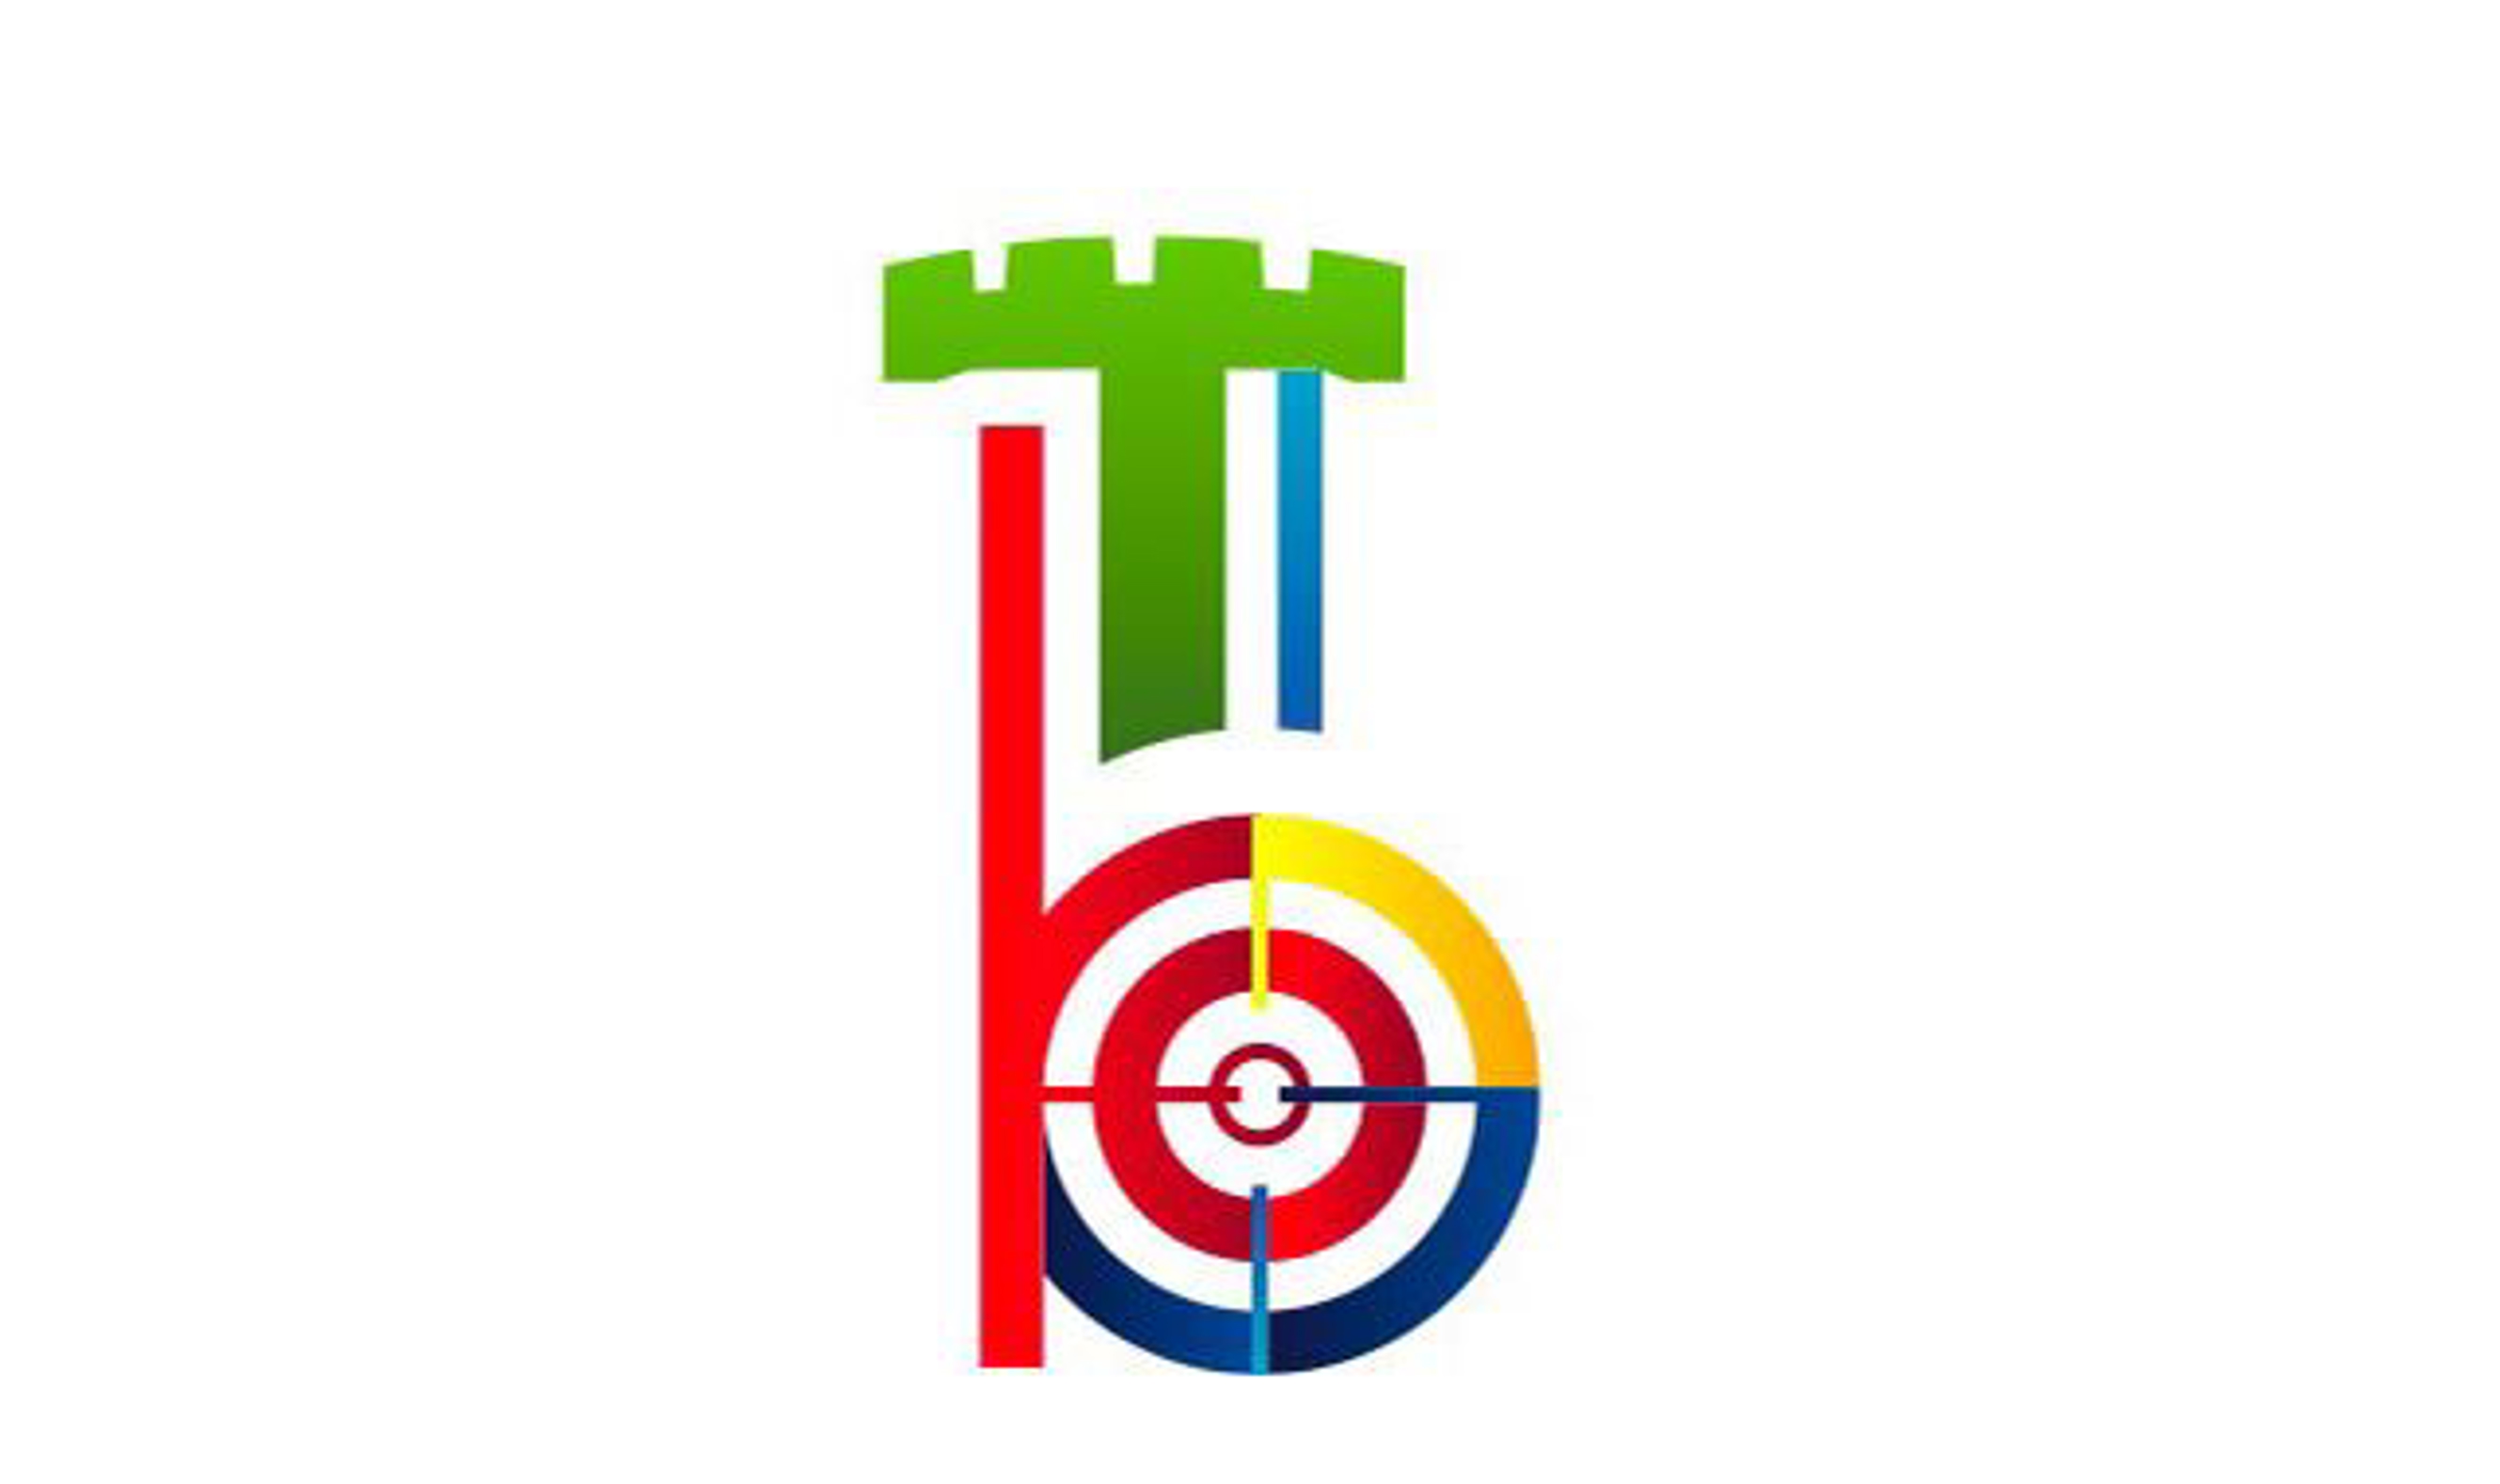 Vom 12. bis 23. September 2019 finden in Bologna die Wettkämpfe Gewehr 50m sowie Pistole 25/50m statt, vom 22. bis 27. September gehen in Tolmezzo die Wettkämpfe Gewehr 300m über die Bühne.